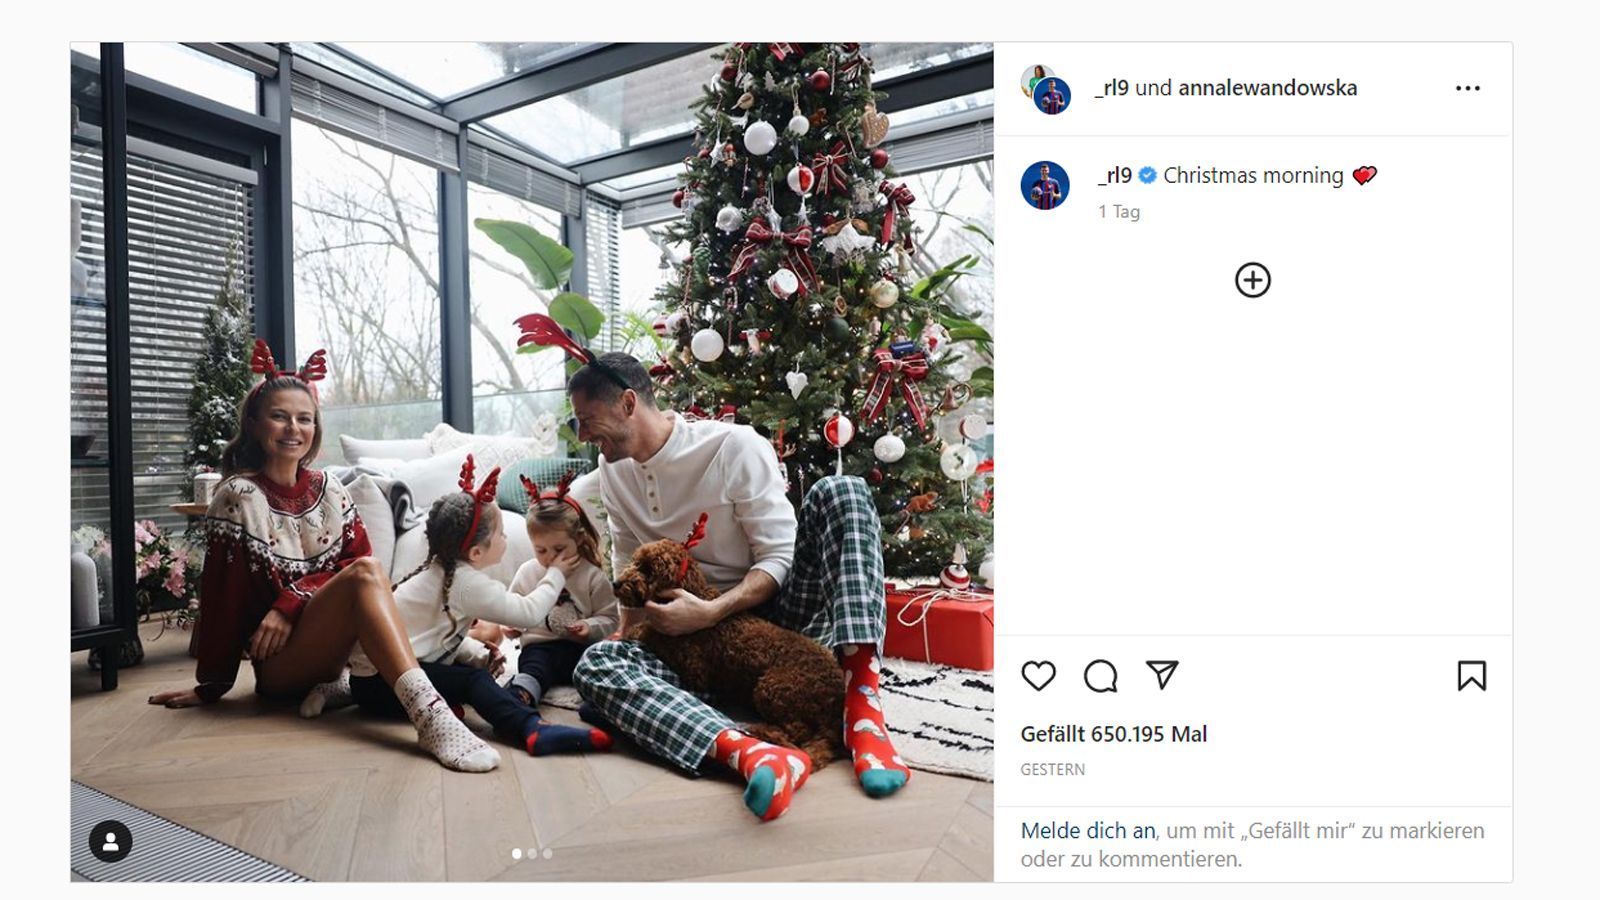 
                <strong>Robert Lewandowski (Fußballer, FC Barcelona) </strong><br>
                Barcelona-Stürmer Robert Lewandowski beginnt den Weihnachtsmorgen mit seiner Familie. In der besinnlichen Zeit erfreut sich der Pole an seinen Liebsten, bevor es in der spanischen LaLiga wieder in die Rückrunde geht. Hier kann der 34-jährige Stürmer Barca aber wegen seiner Liga-Sperre vorerst nicht mit Toren helfen. 
              